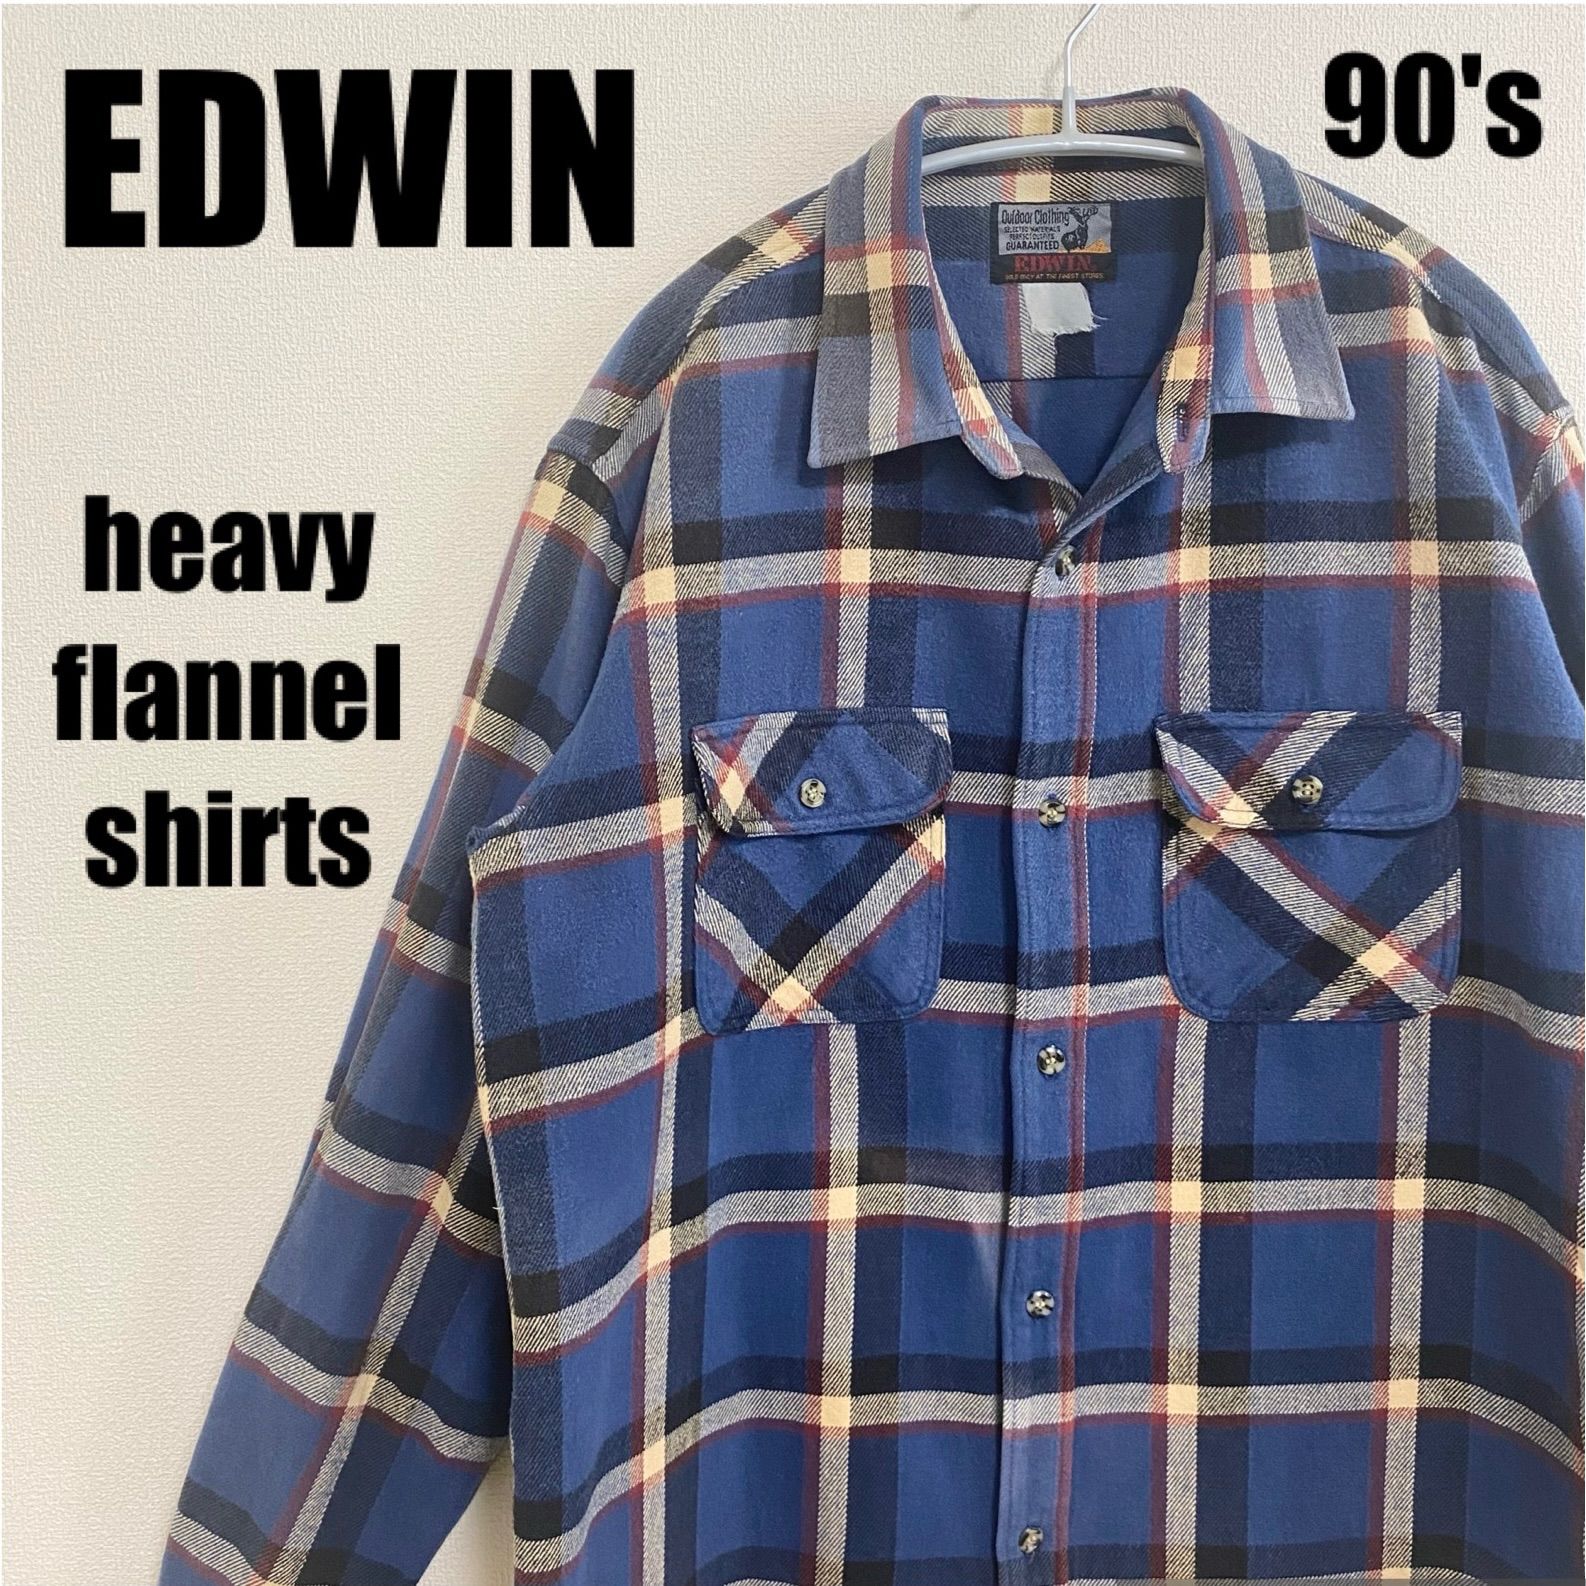 EDWIN 90s ネルシャツ 長袖シャツ フランネル ヘビーネル 厚手